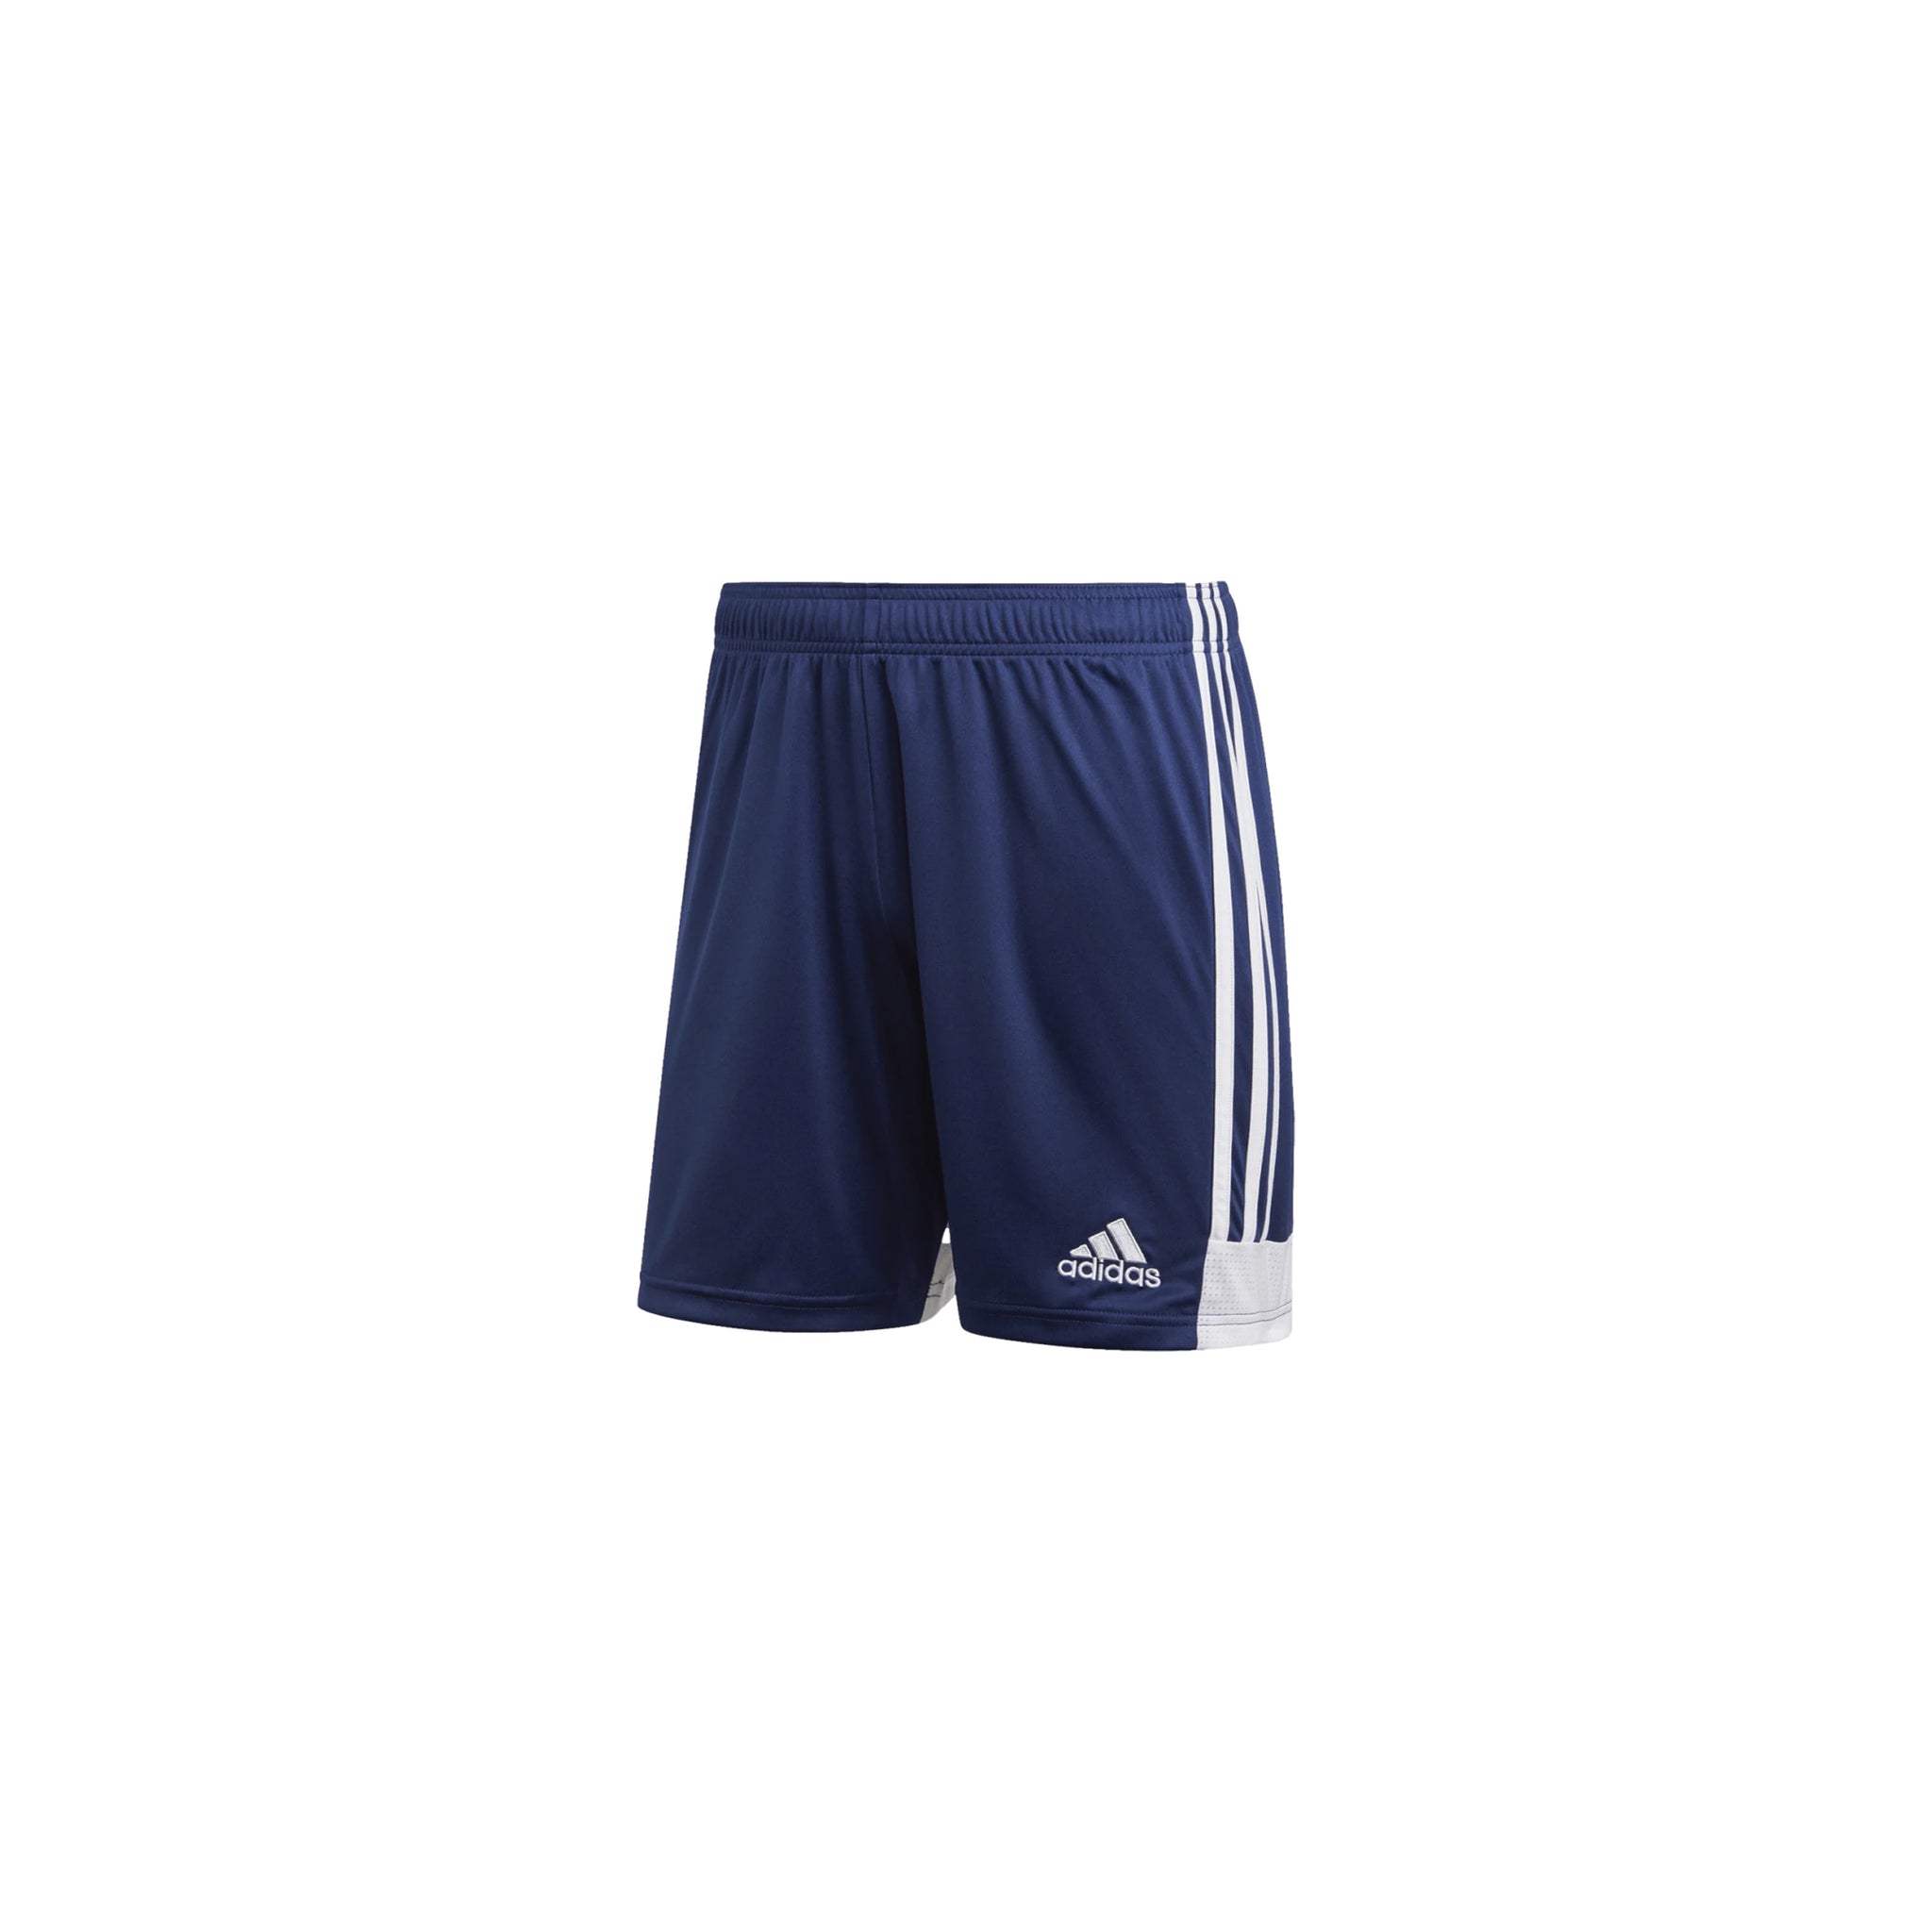 ADIDAS Tastigo 19 Shorts (Navy)